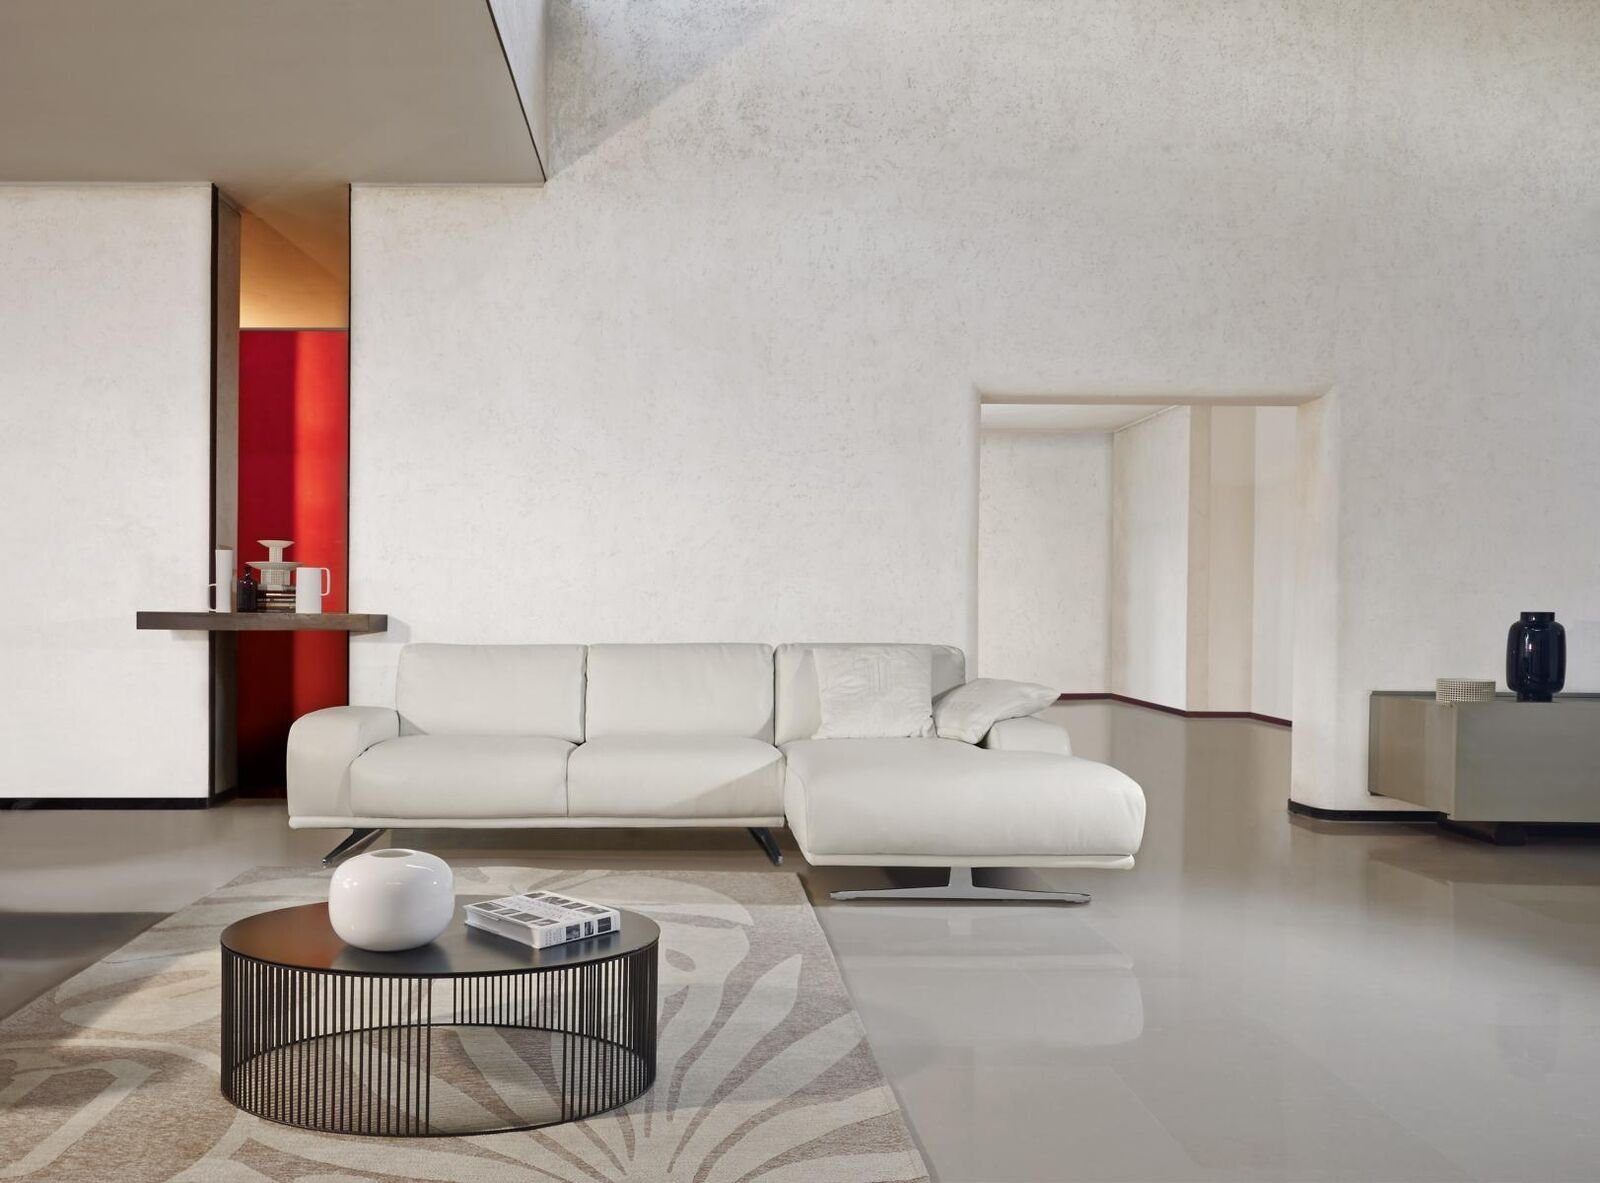 Ecksofa JVmoebel Wohnzimmer Design Ecksofa Möbel Form Luxus Sofa Weiß Italienische L